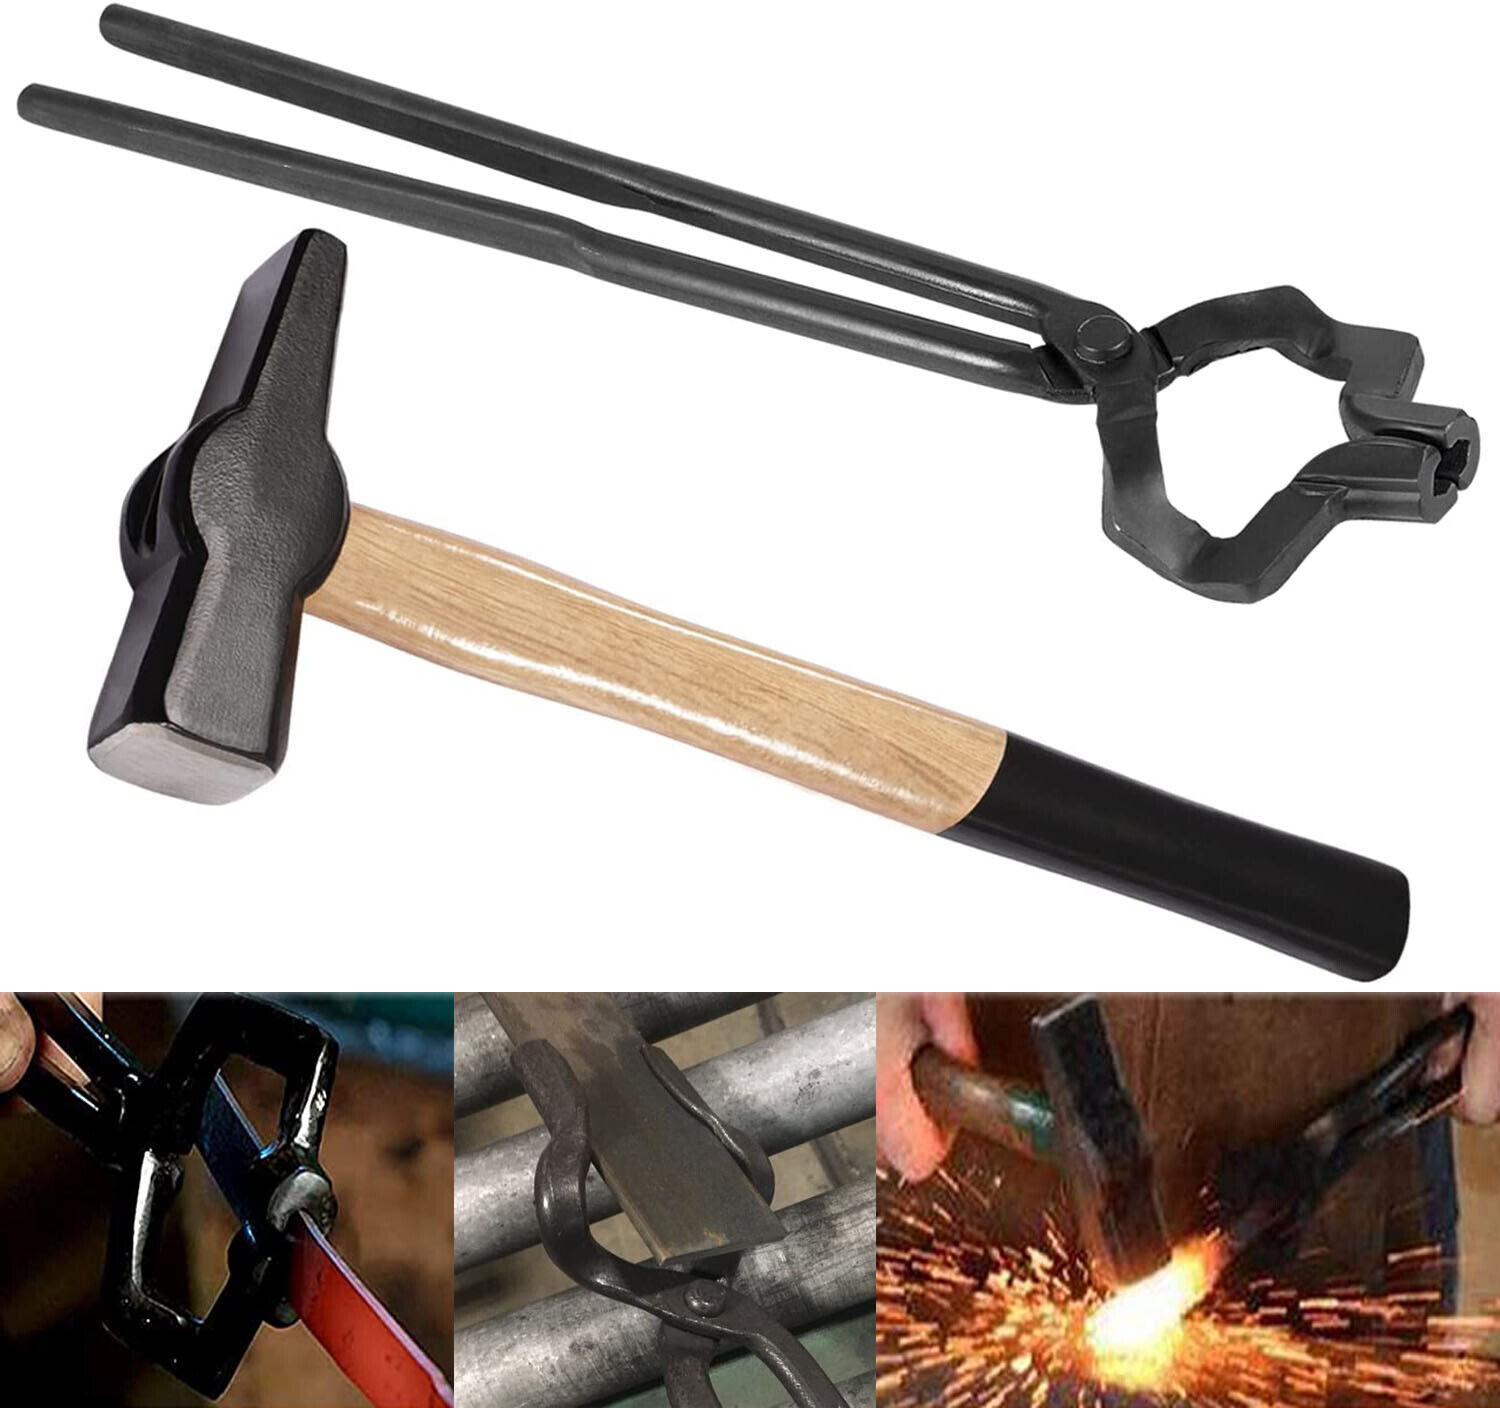 16inch Z V-Bit Tongs & 1.5KG Blacksmith Hammer For Blacksmith Anvil Knife Making